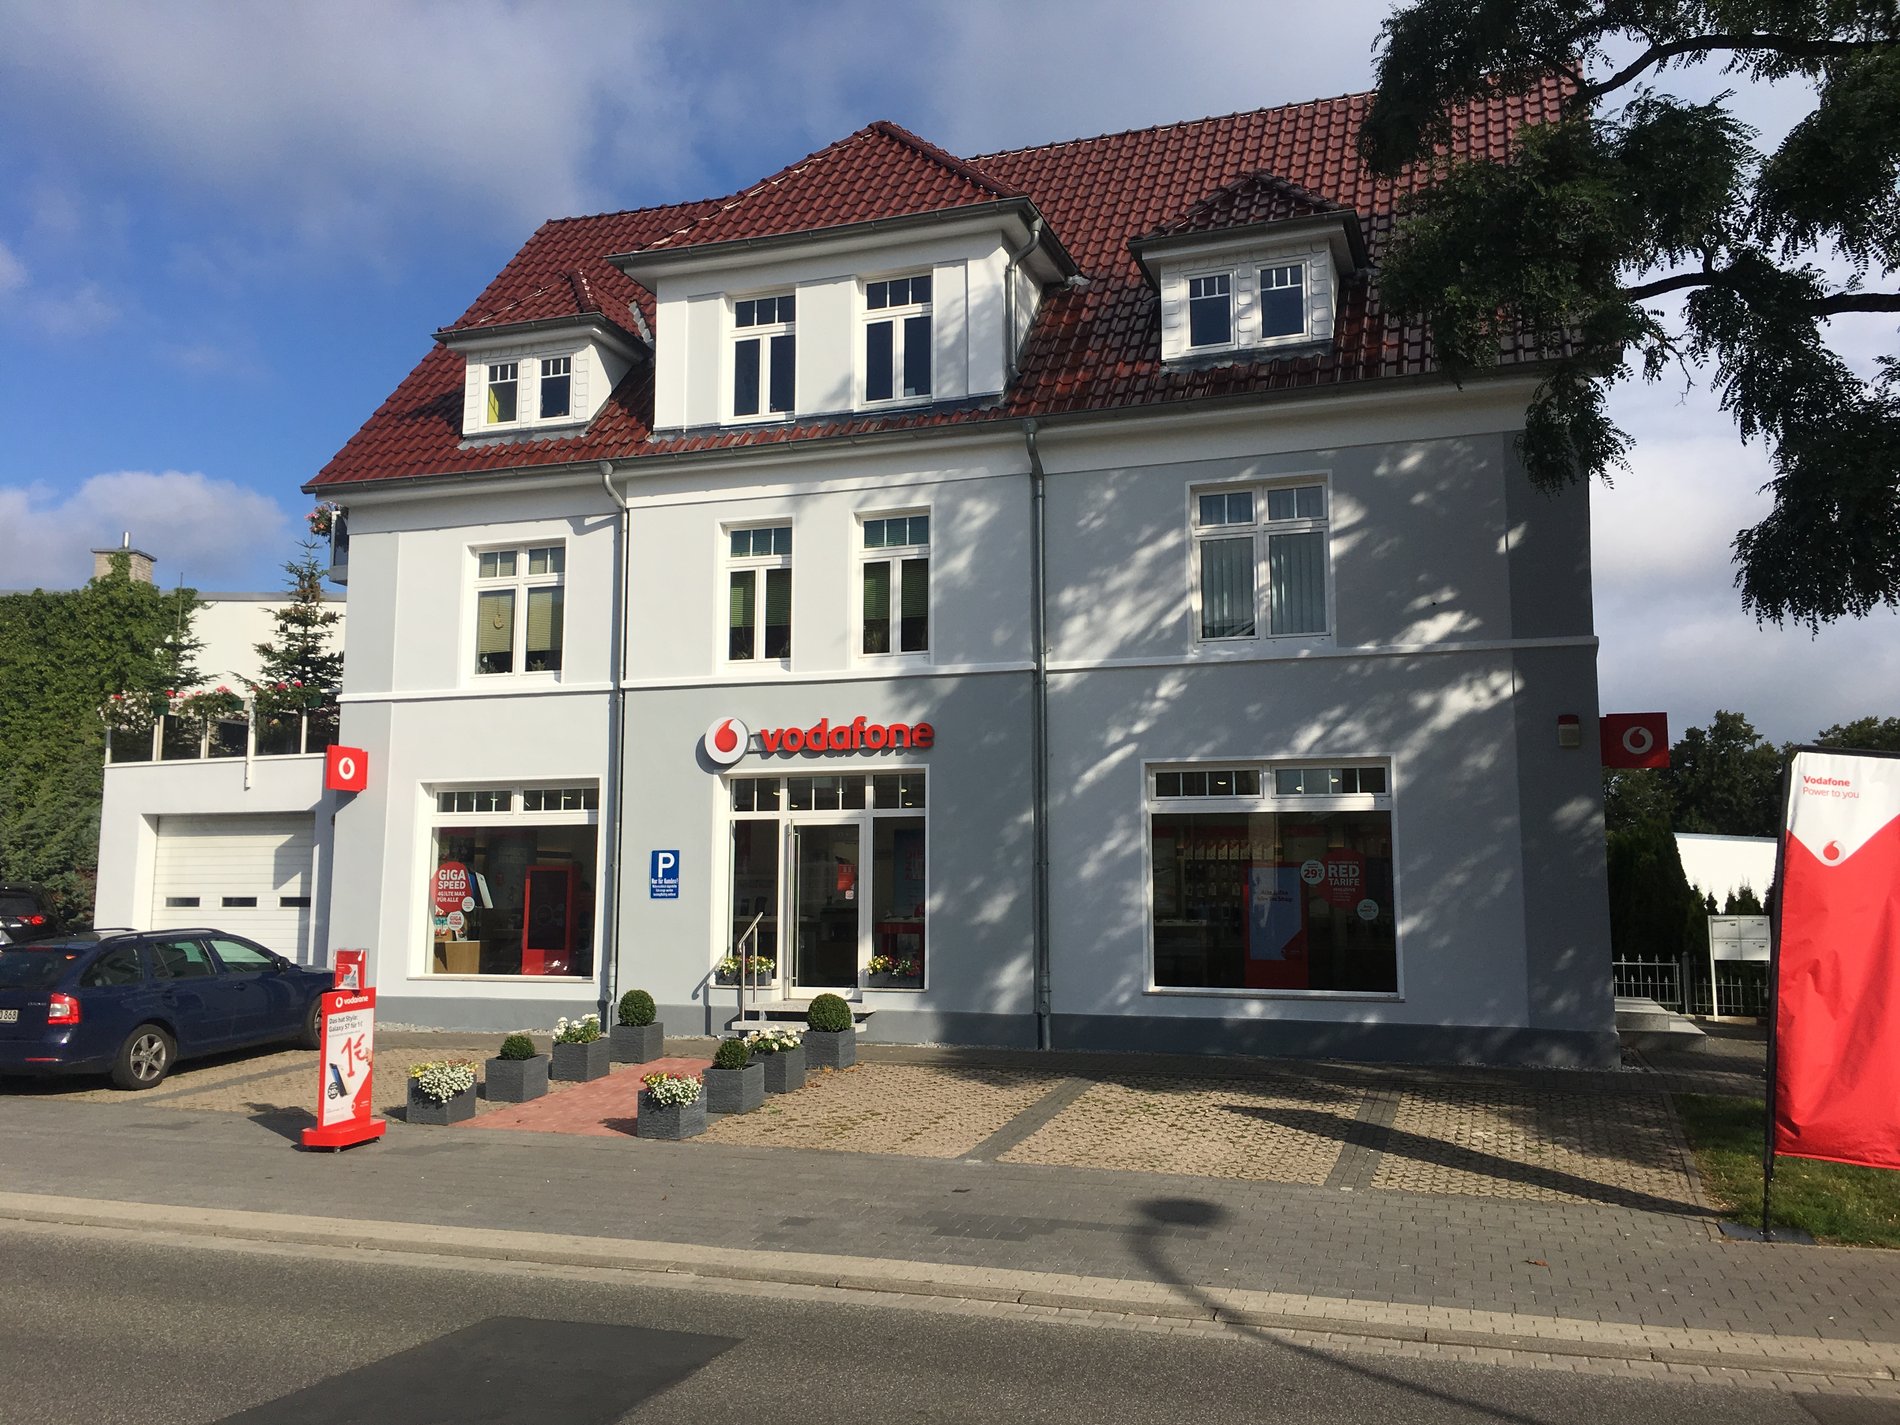 Vodafone-Shop in Parchim, Ludwigsluster Str. 39